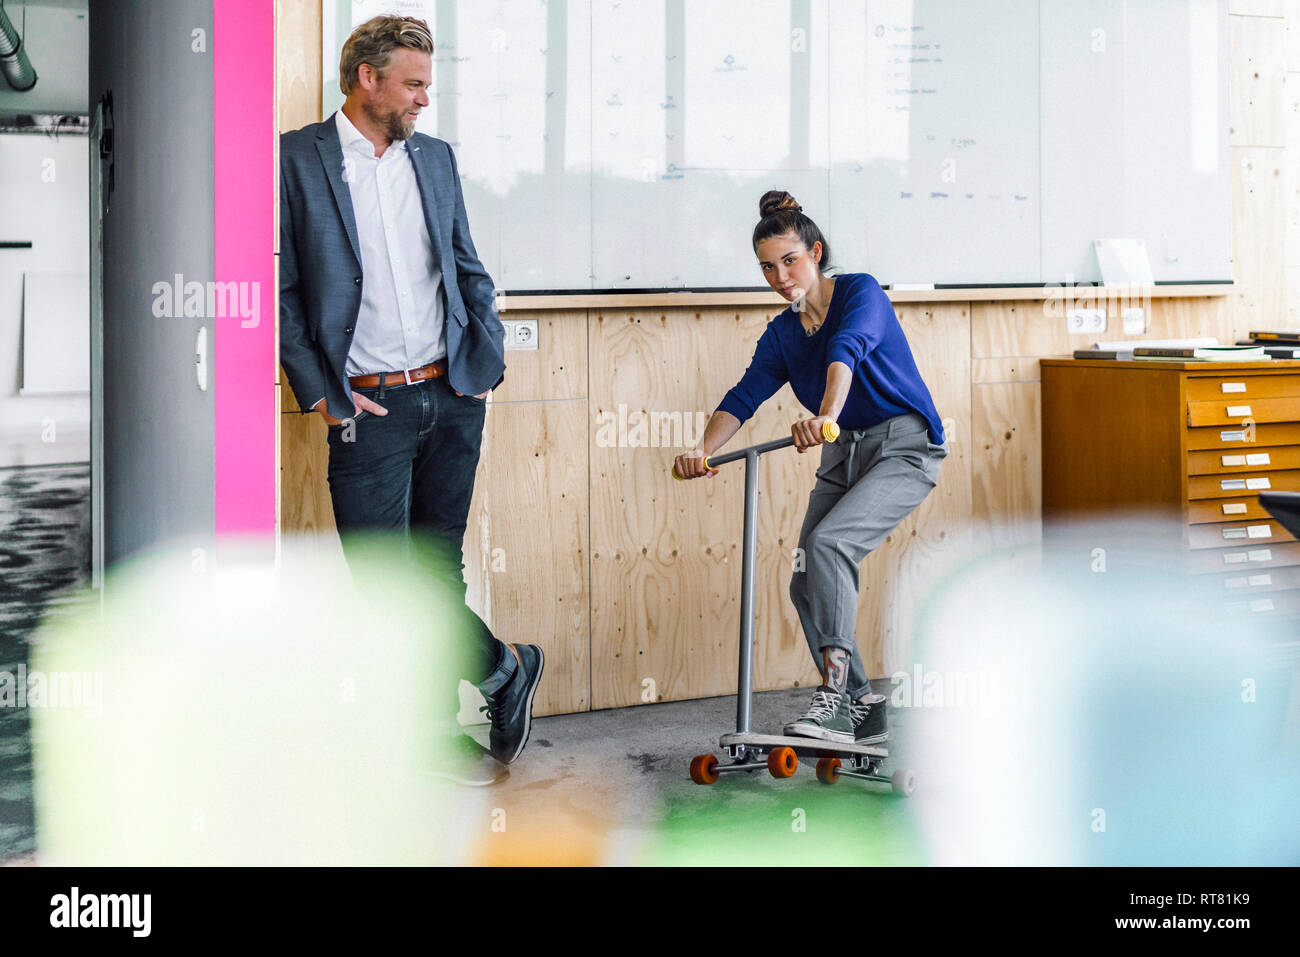 Uomo maturo e il suo assistente a giocare con gli scooter, stando in ufficio nella parte anteriore del pannello bianco Foto Stock